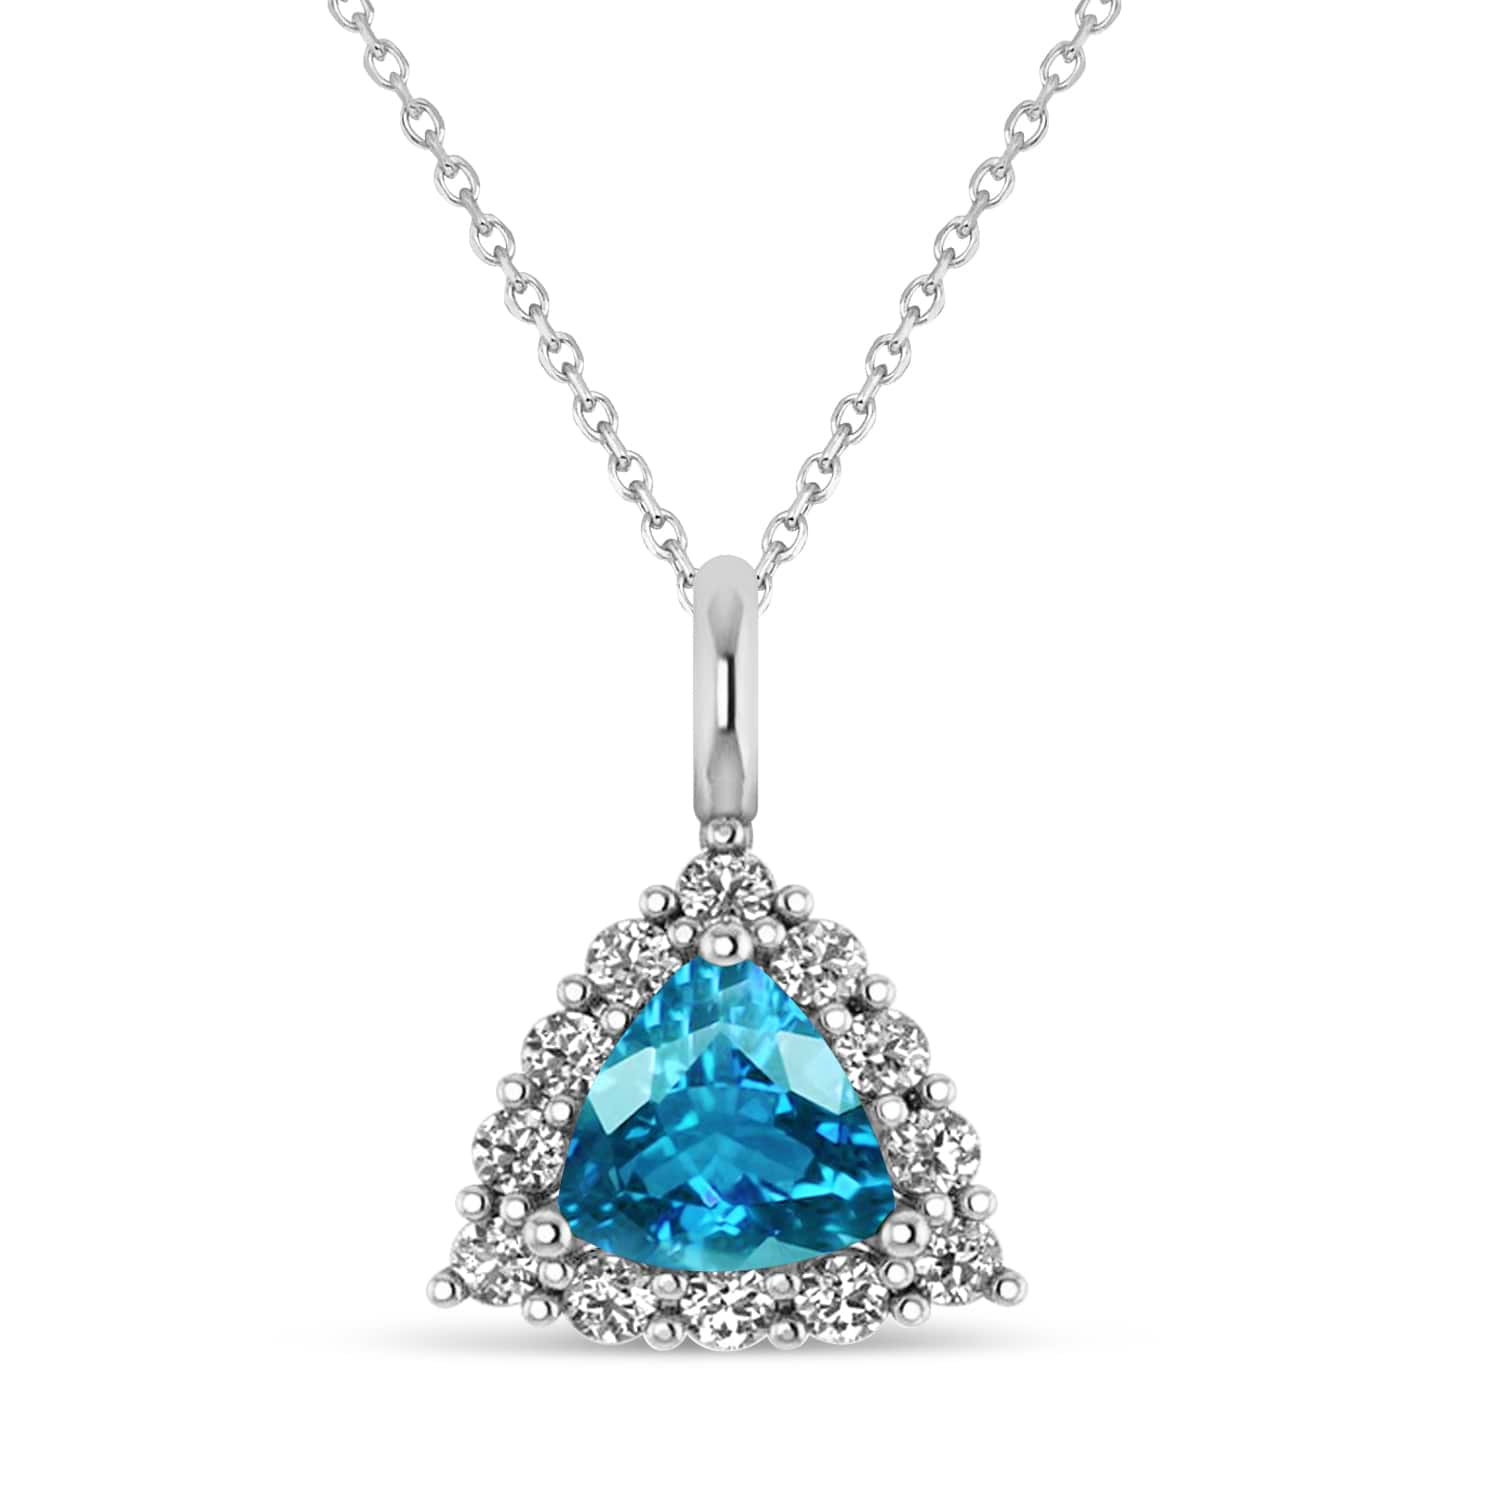 Diamond & Blue Topaz Trillion Cut Pendant Necklace 14k White Gold (1.6ct)